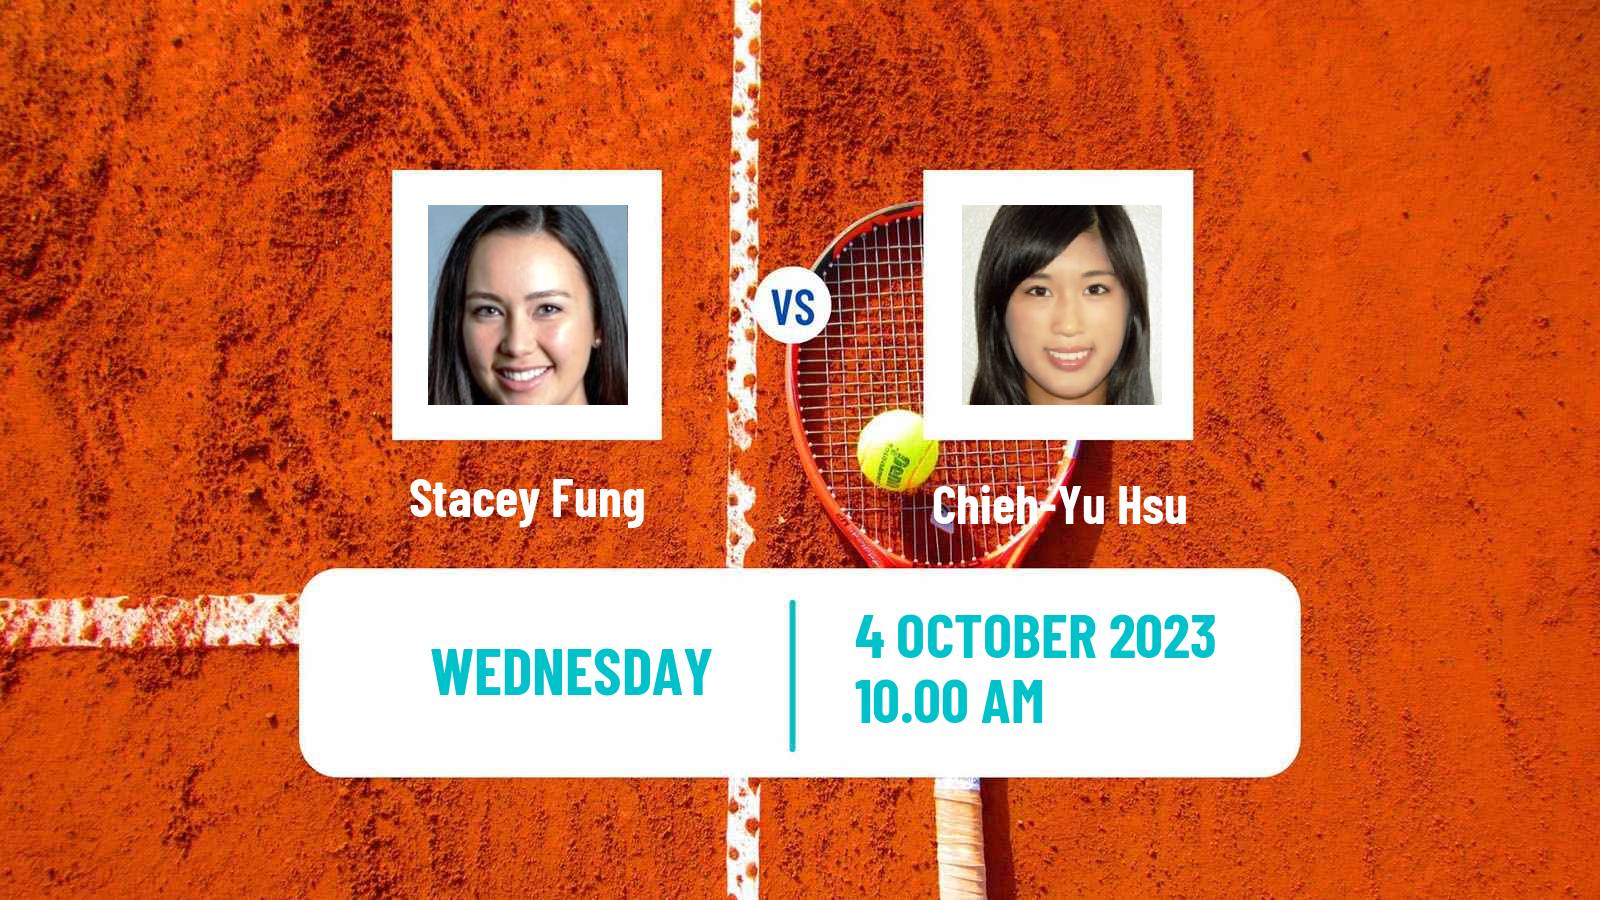 Tennis ITF W60 Rome Ga 2 Women Stacey Fung - Chieh-Yu Hsu